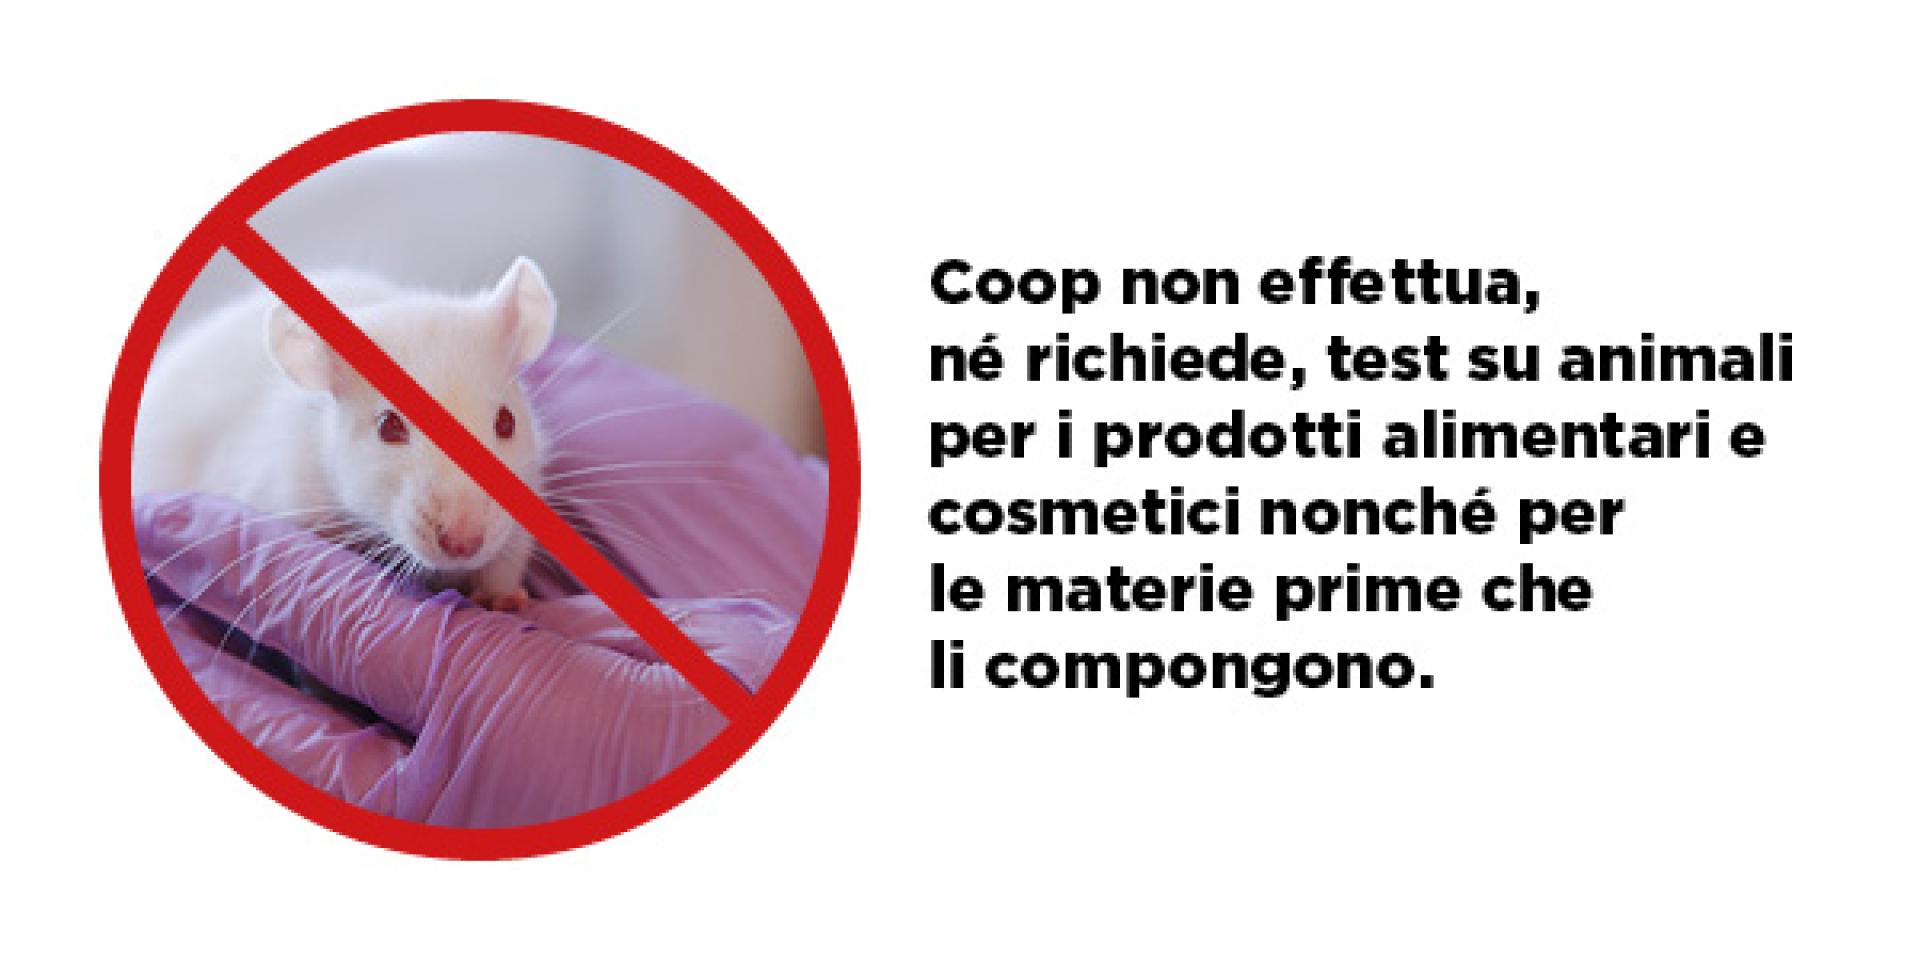 coop non effettua nè richiede test su animali per i prodotti alimentari e cosmetici nonchè per le materie prime che li compongono